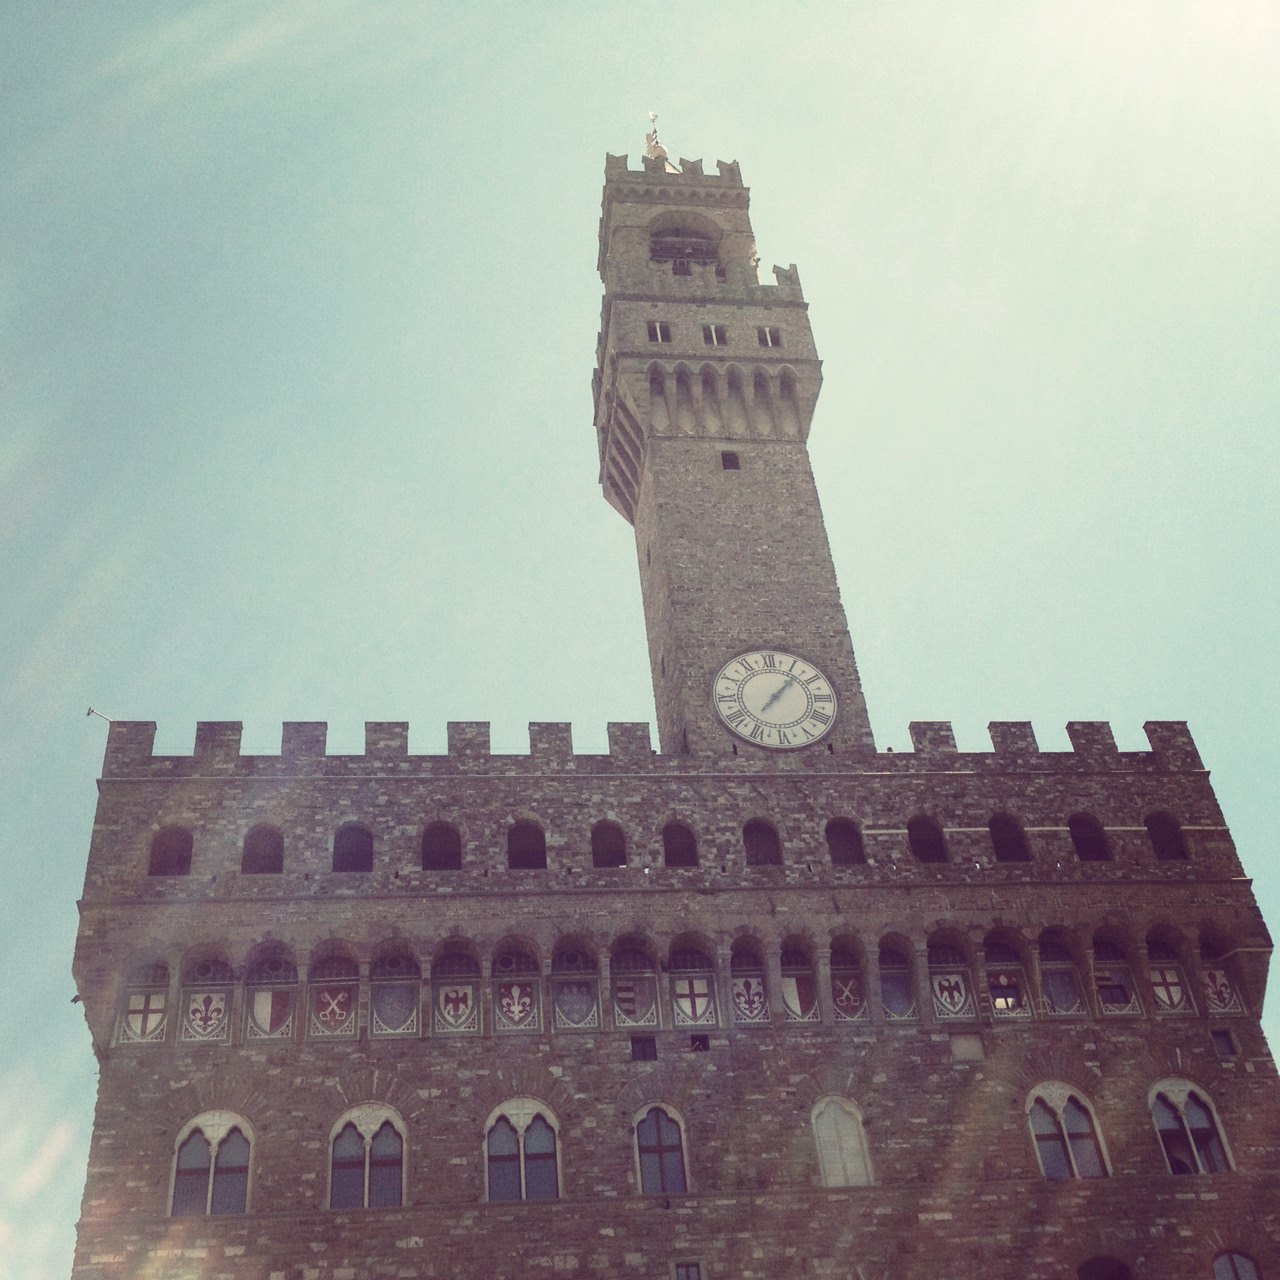 I droni per la tutela dei monumenti, innovativo progetto della Prefettura di Firenze